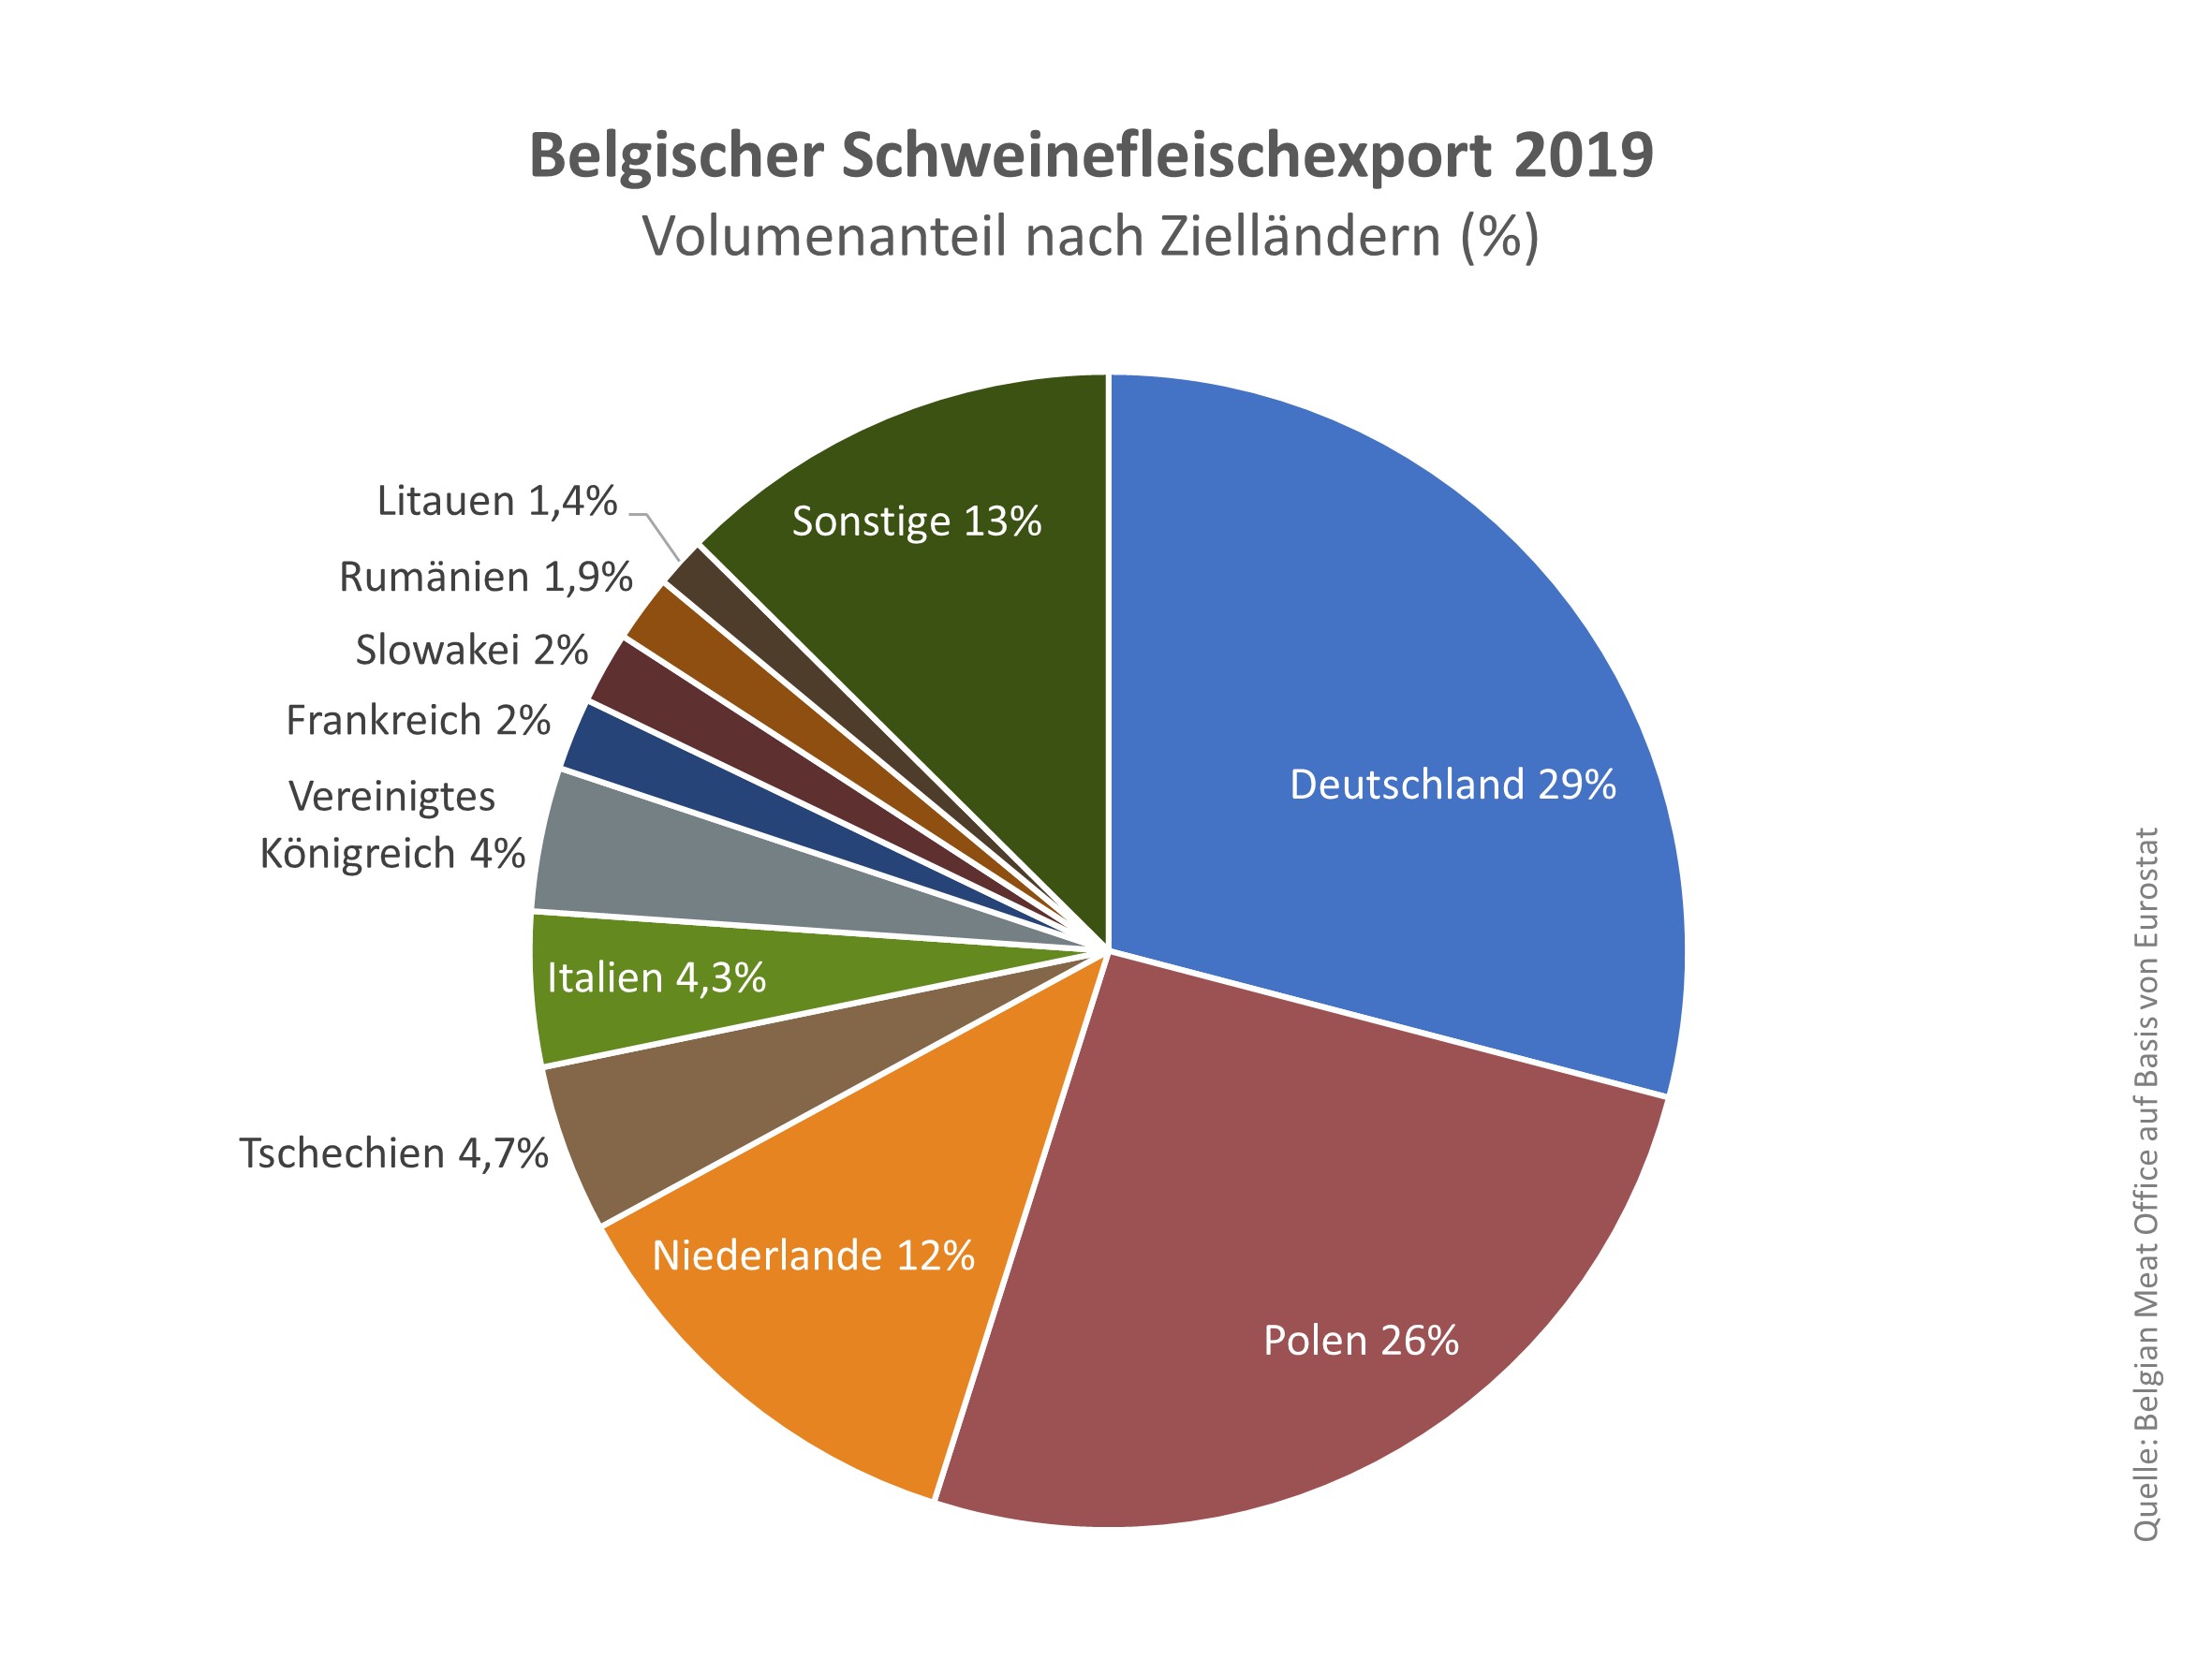 Belgischer_Schweinefleischexport_2019_nach_Ziellandern.jpg